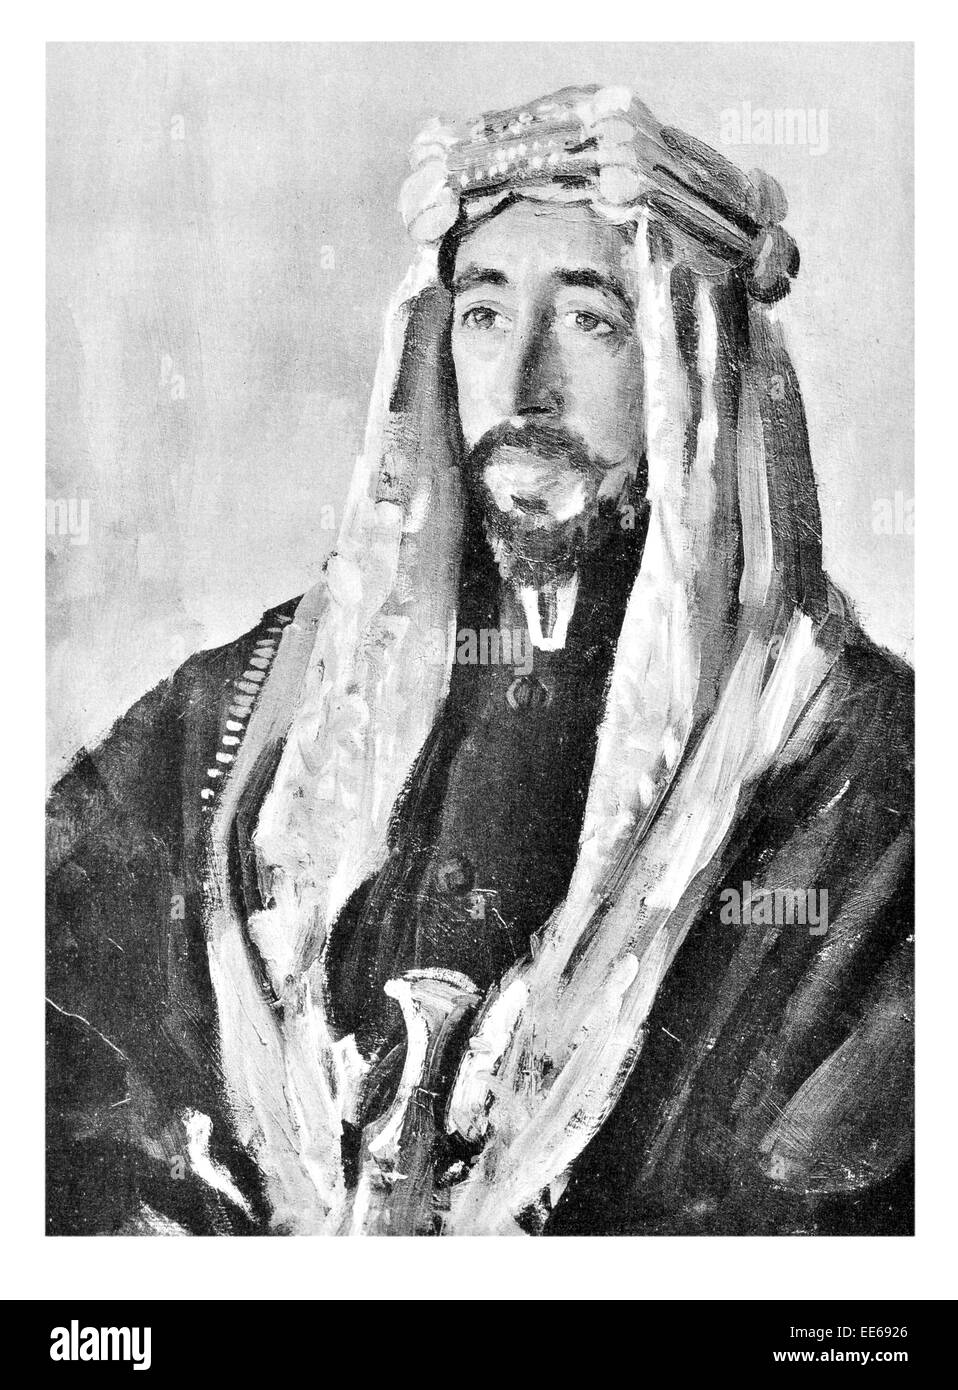 Ho Faisal Bin Hussein bin Ali al-Hashimi re del regno arabo di Siria maggiore Siria 1920 re di Iraq dinastia hashemita Foto Stock